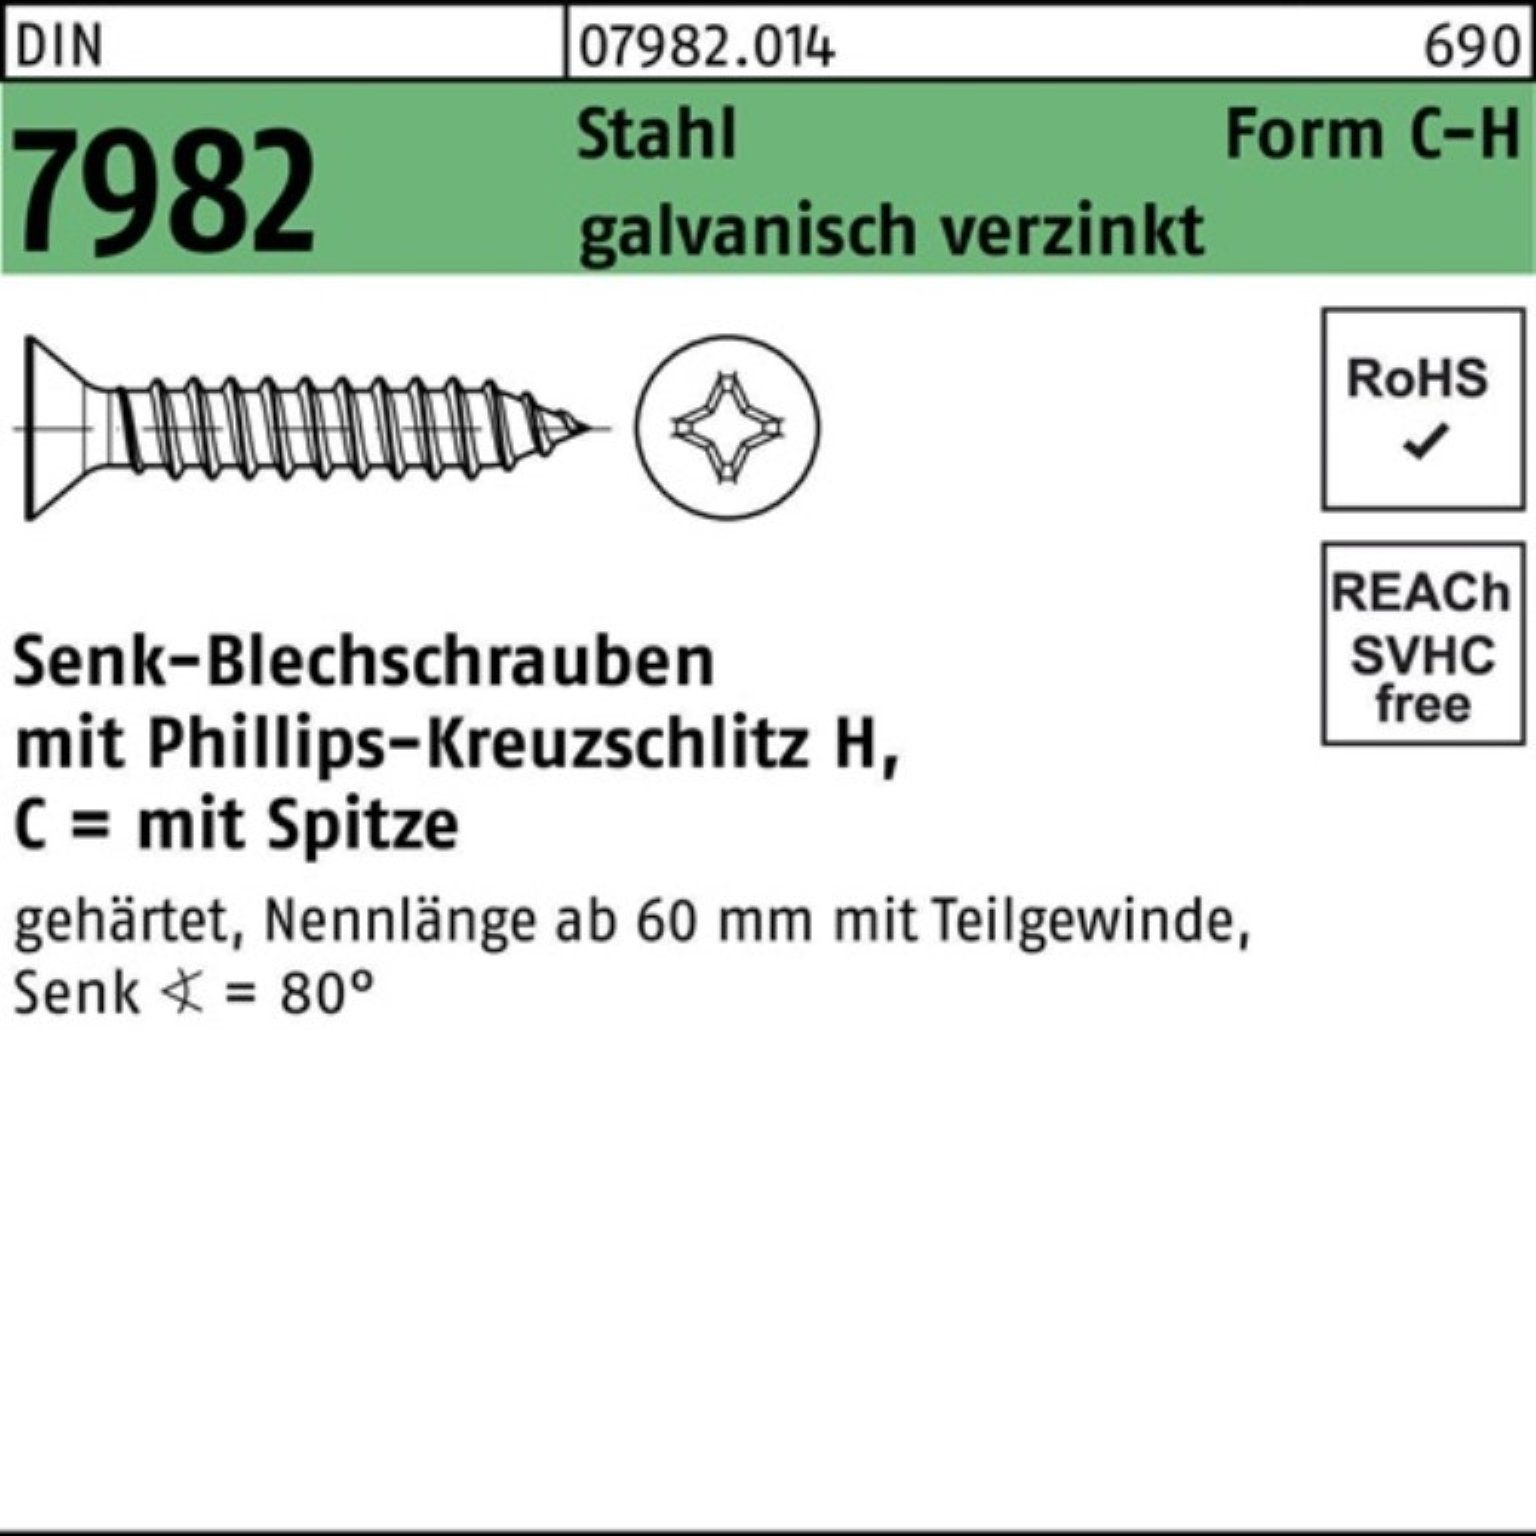 Reyher Schraube 4,8x16-H DIN C Senkblechschraube galv. 7982 100er Stahl PH/Spitze Pack